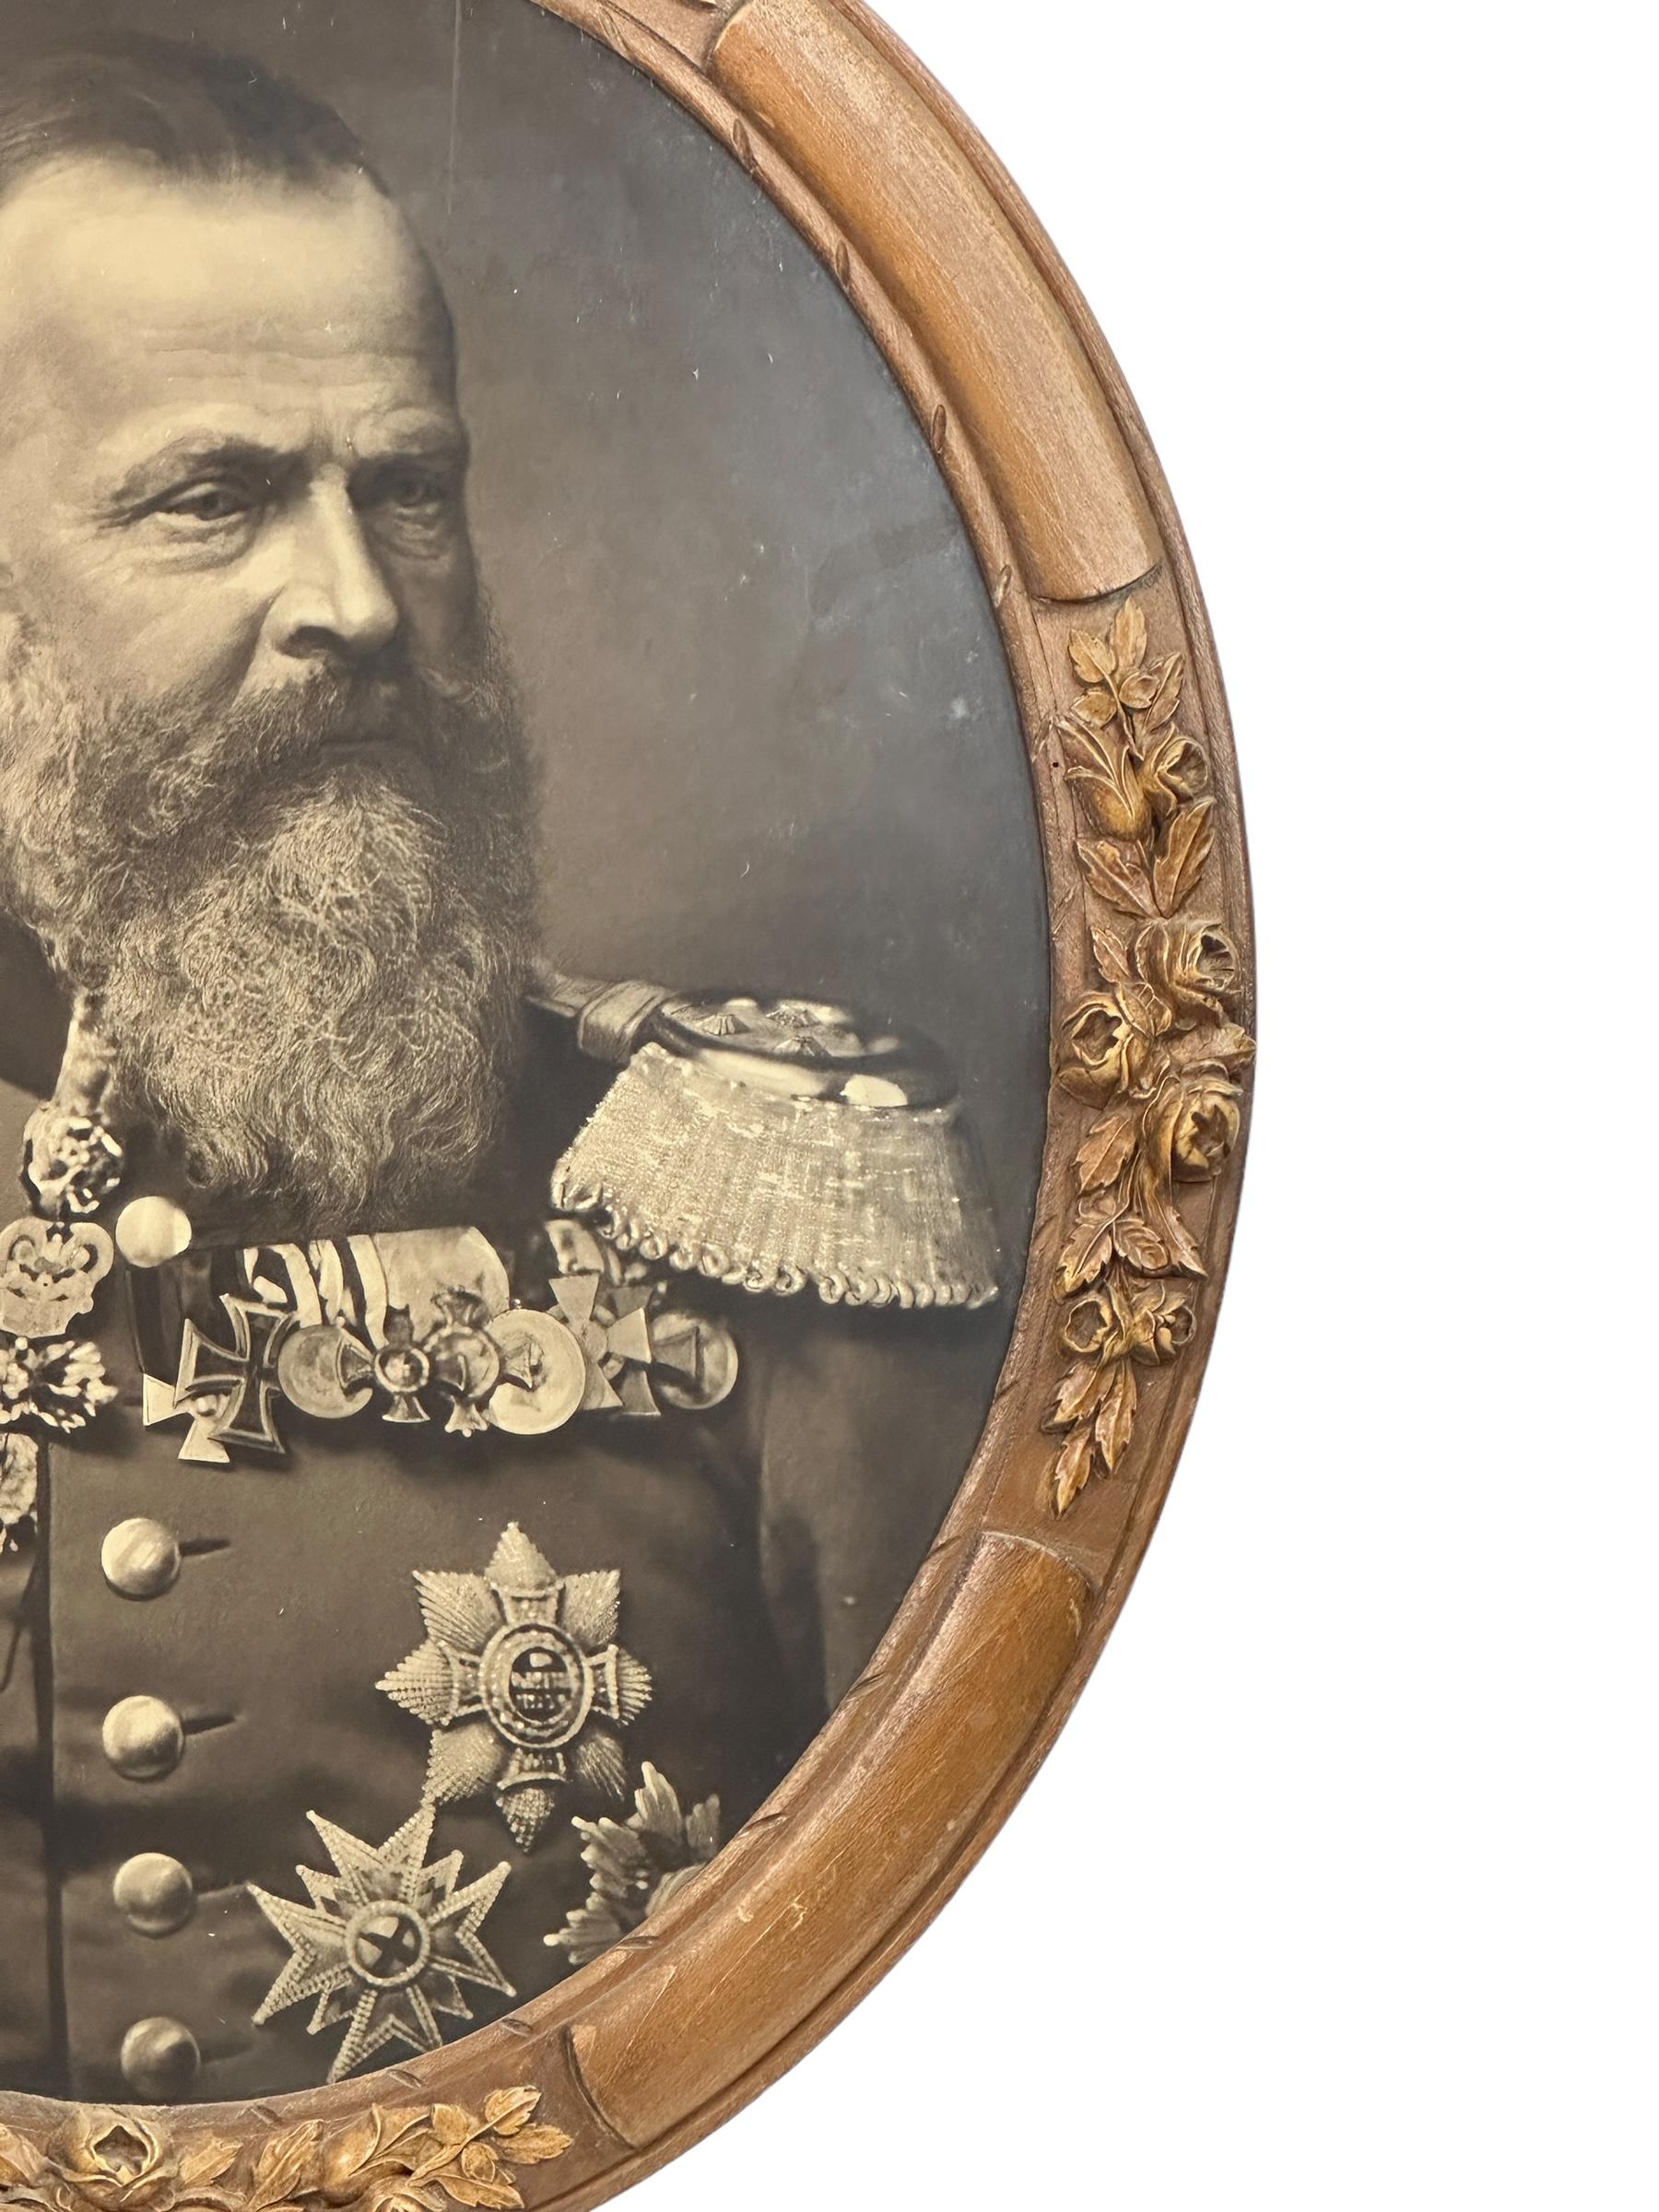 Eine außergewöhnliche Originalfotografie von Luitpold Karl Joseph Wilhelm Ludwig, Prinzregent von Bayern (12. März 1821 - 12. Dezember 1912).
Schöner handgefertigter Rahmen im Schwarzwaldstil. Wir glauben, dass es ebenfalls aus den 1880er Jahren